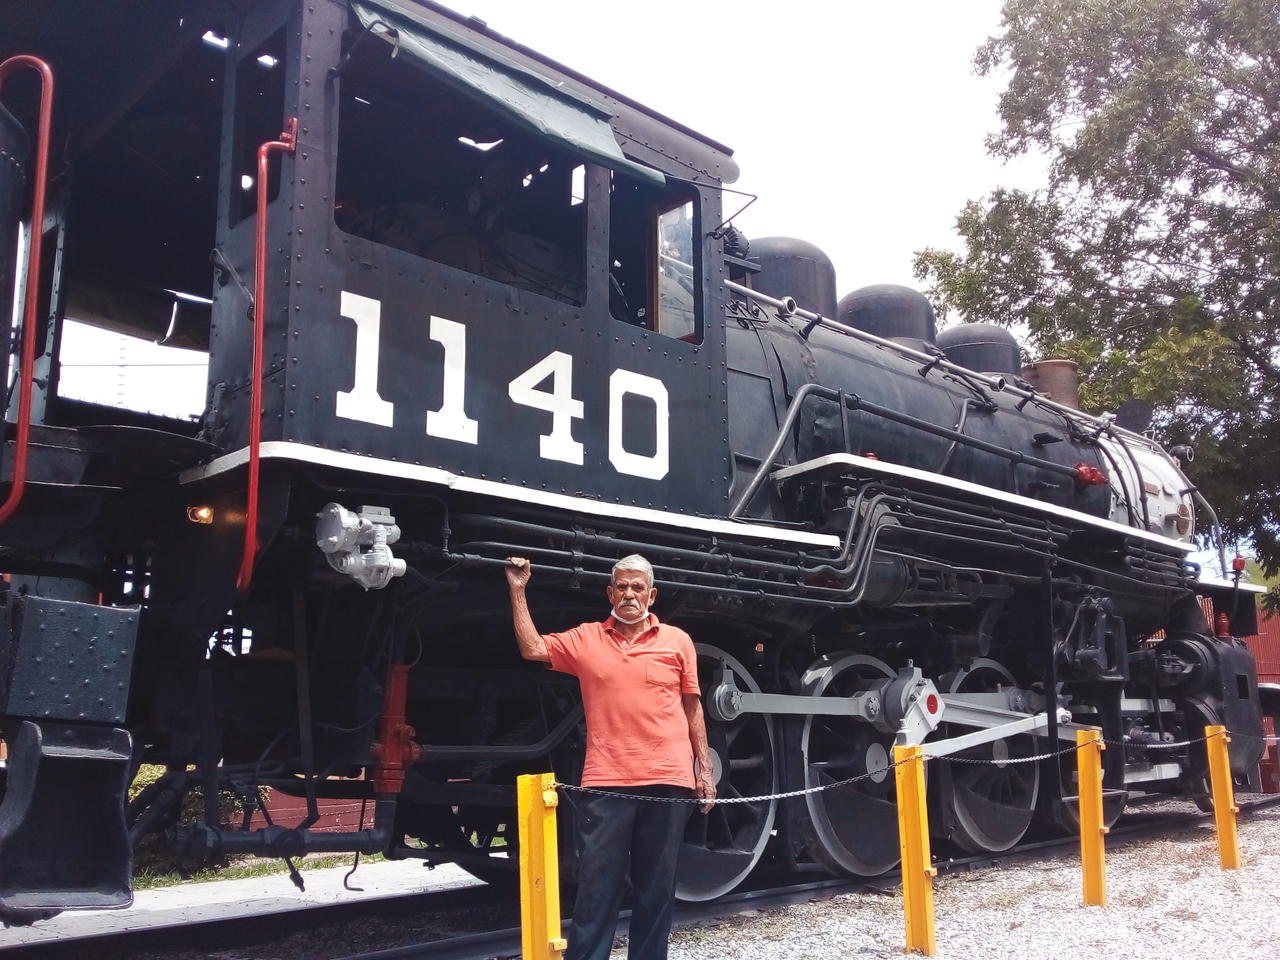 Don Macario y la locomotora 1140, una amistad forjada en los rieles